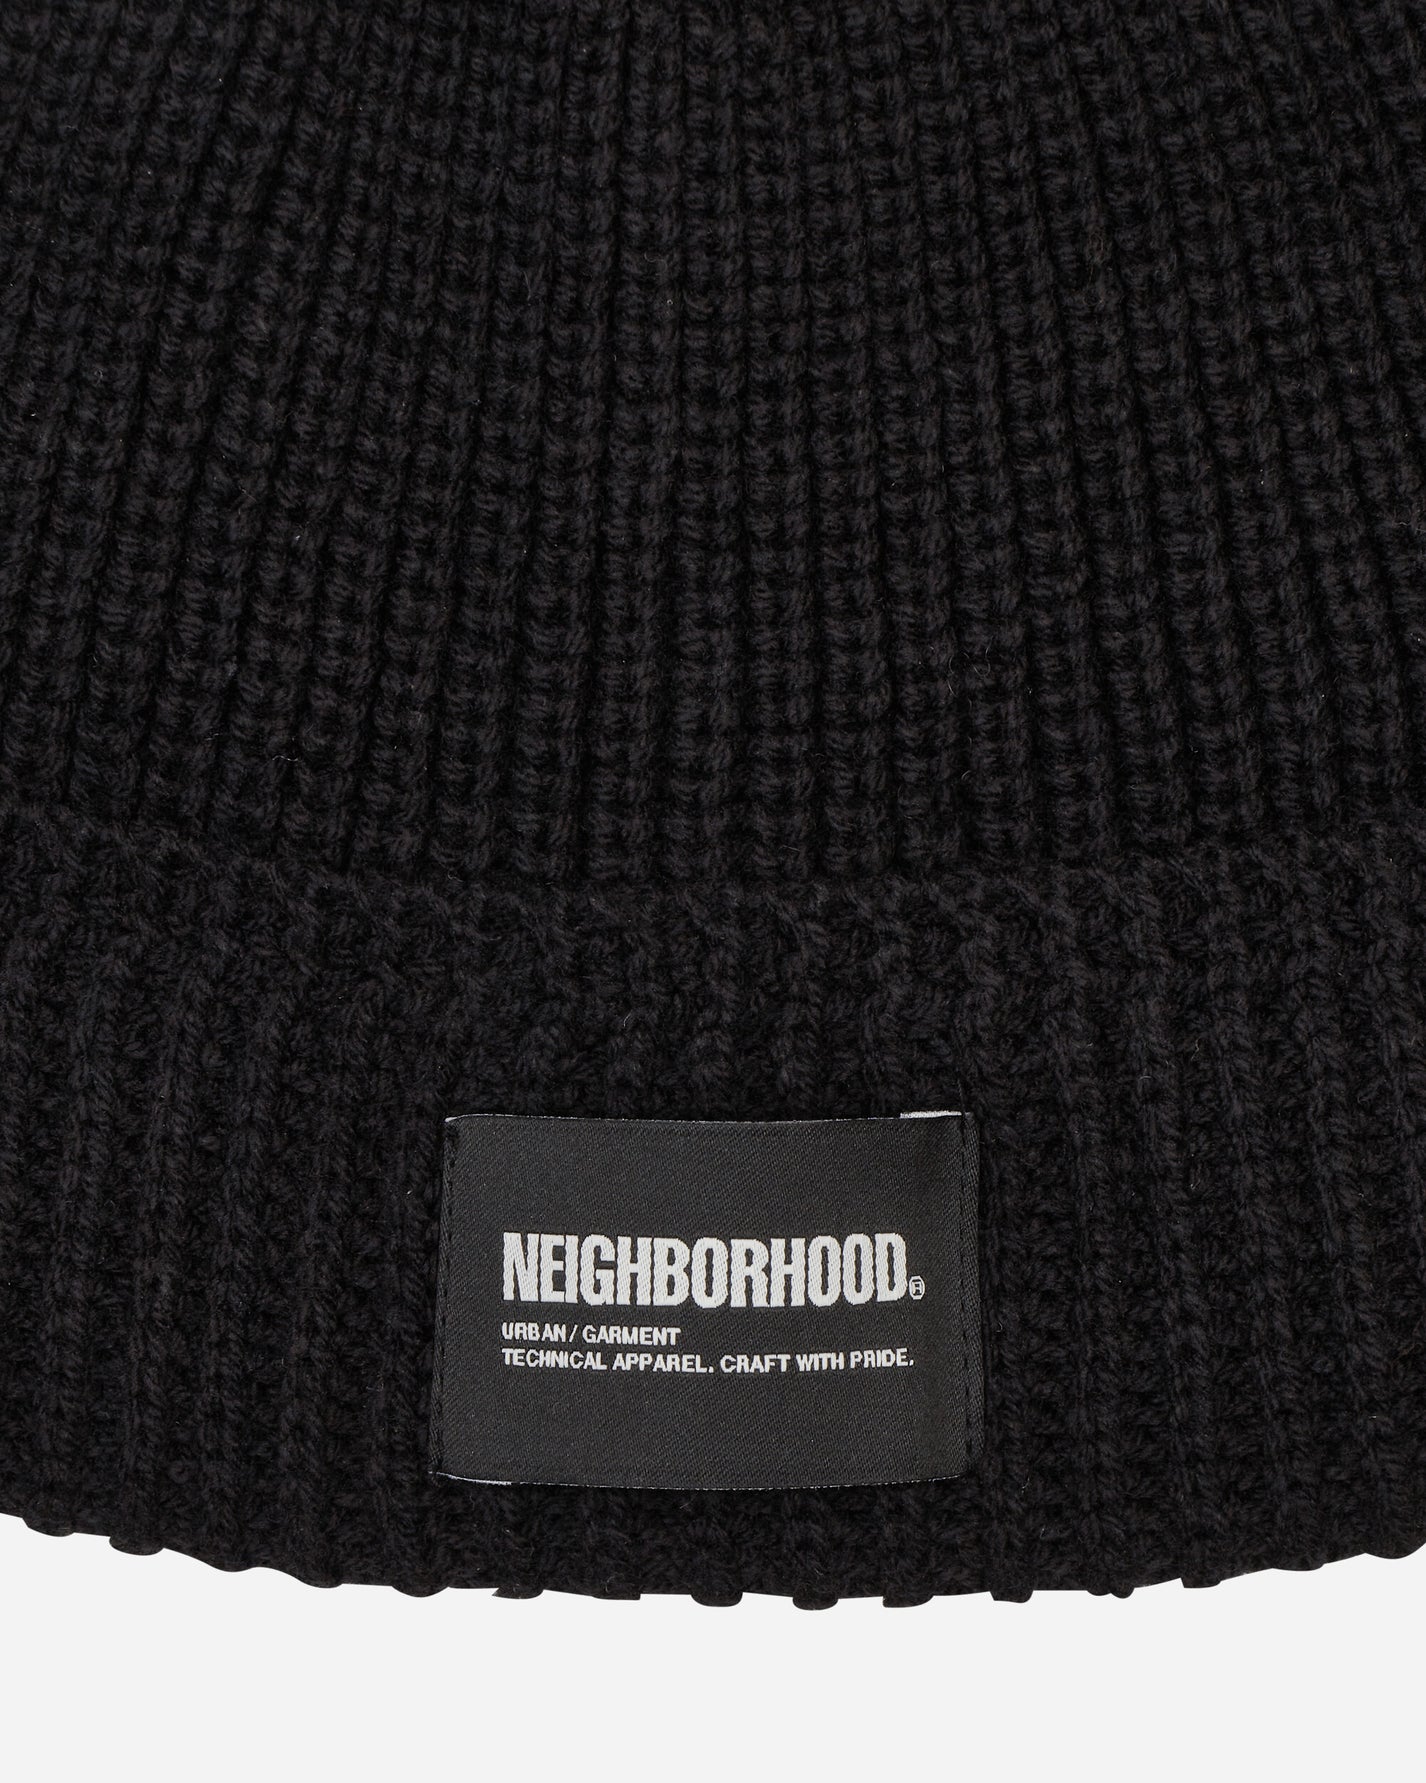 Neighborhood Jp Beanie Black Hats Beanies 241FUNH-HT01 BK